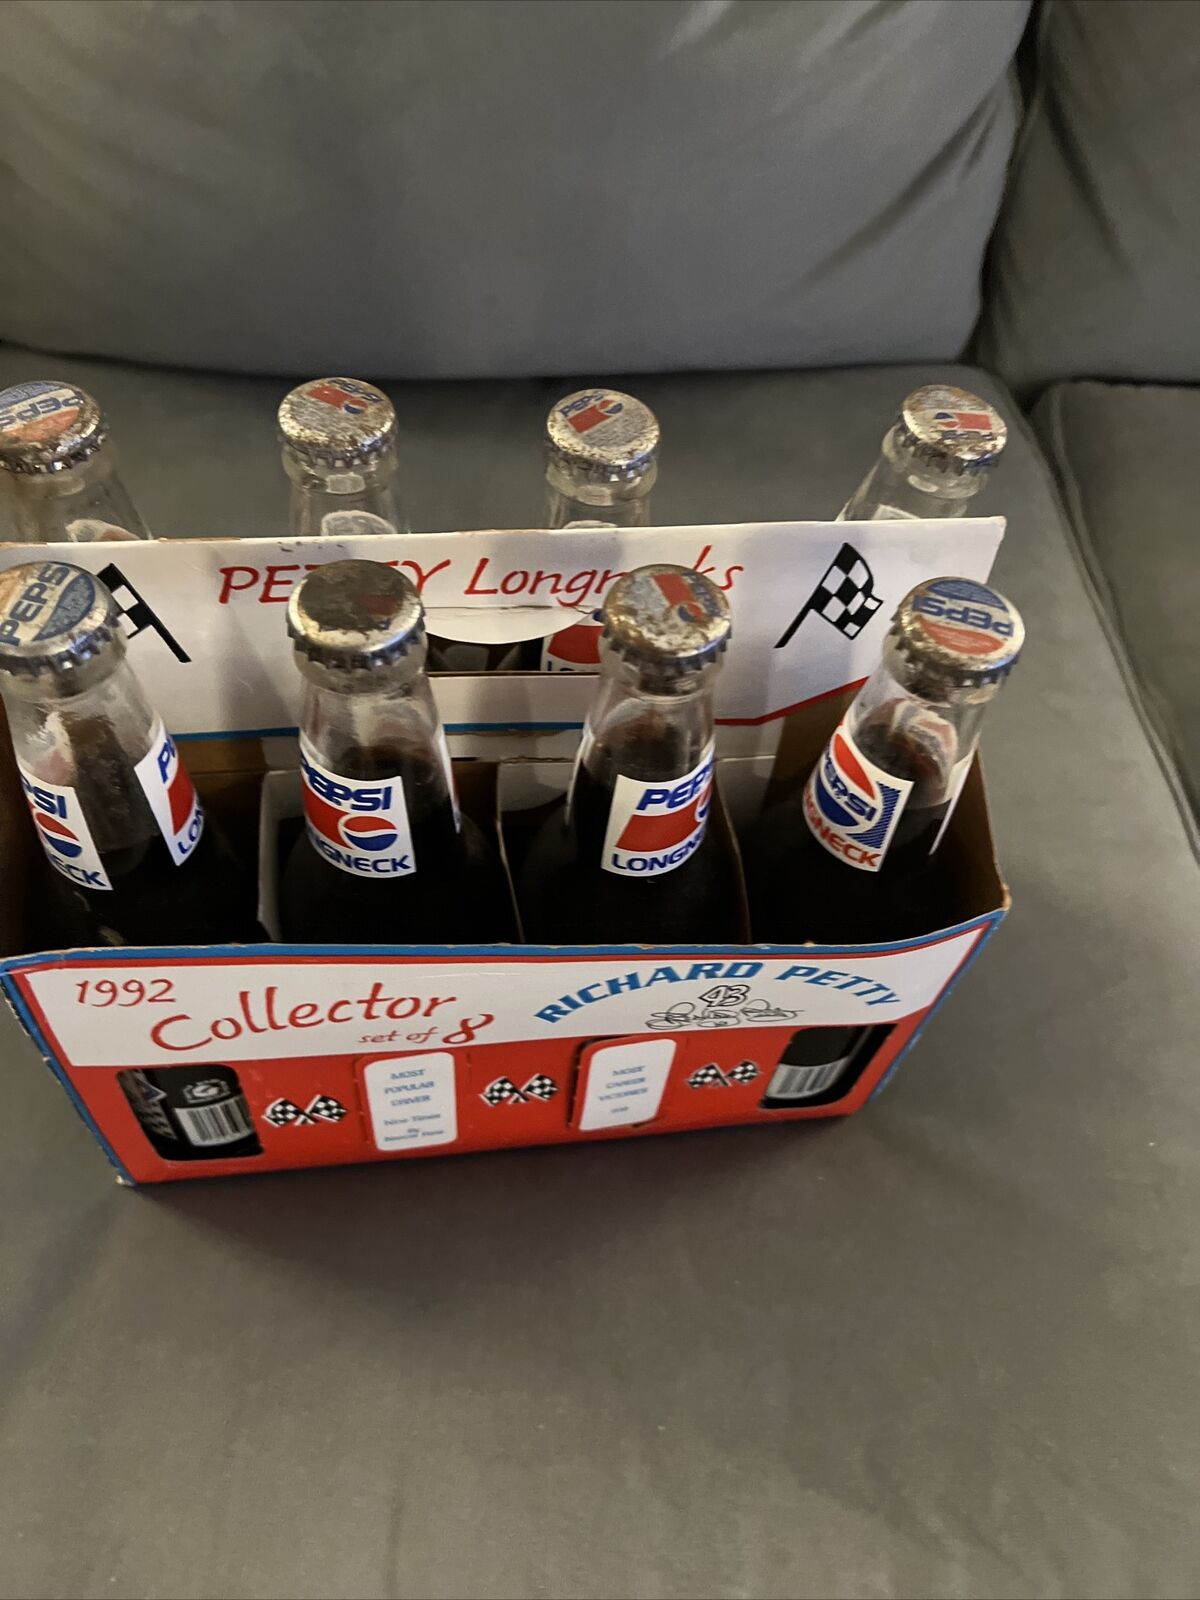 Pepsi Full Bottles 8 pack with box Richard Petty Set of 8 Full Long NeckBottles.